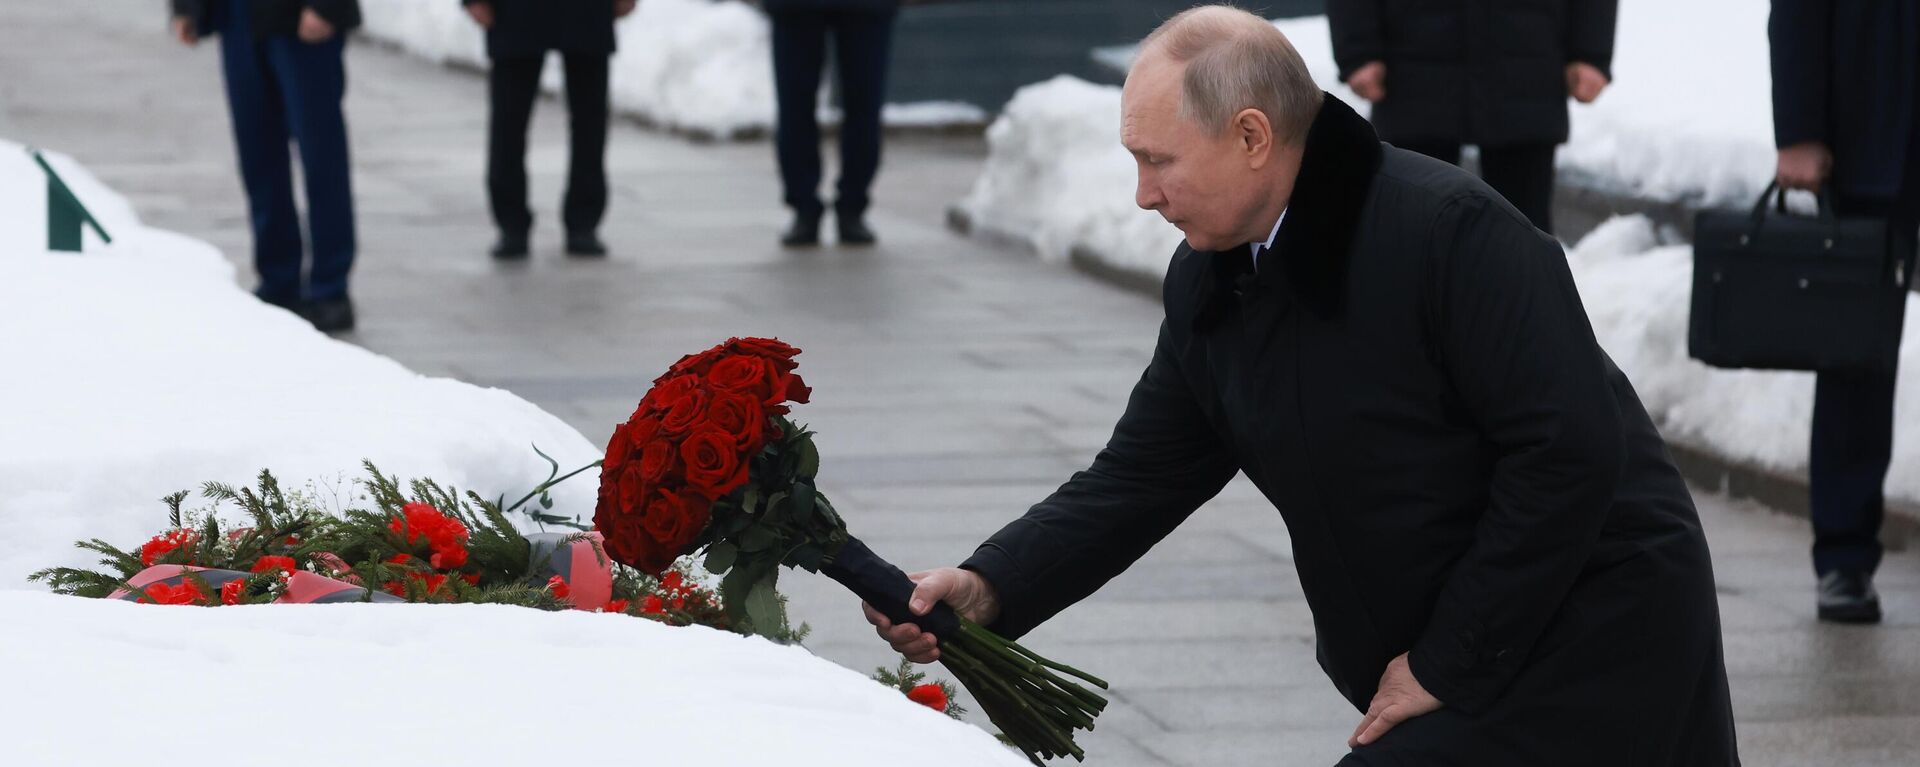 Vladímir Putin, presidente ruso, deposita flores en el monumento a la Madre Patria, el 27 de enero de 2024 - Sputnik Mundo, 1920, 27.01.2024